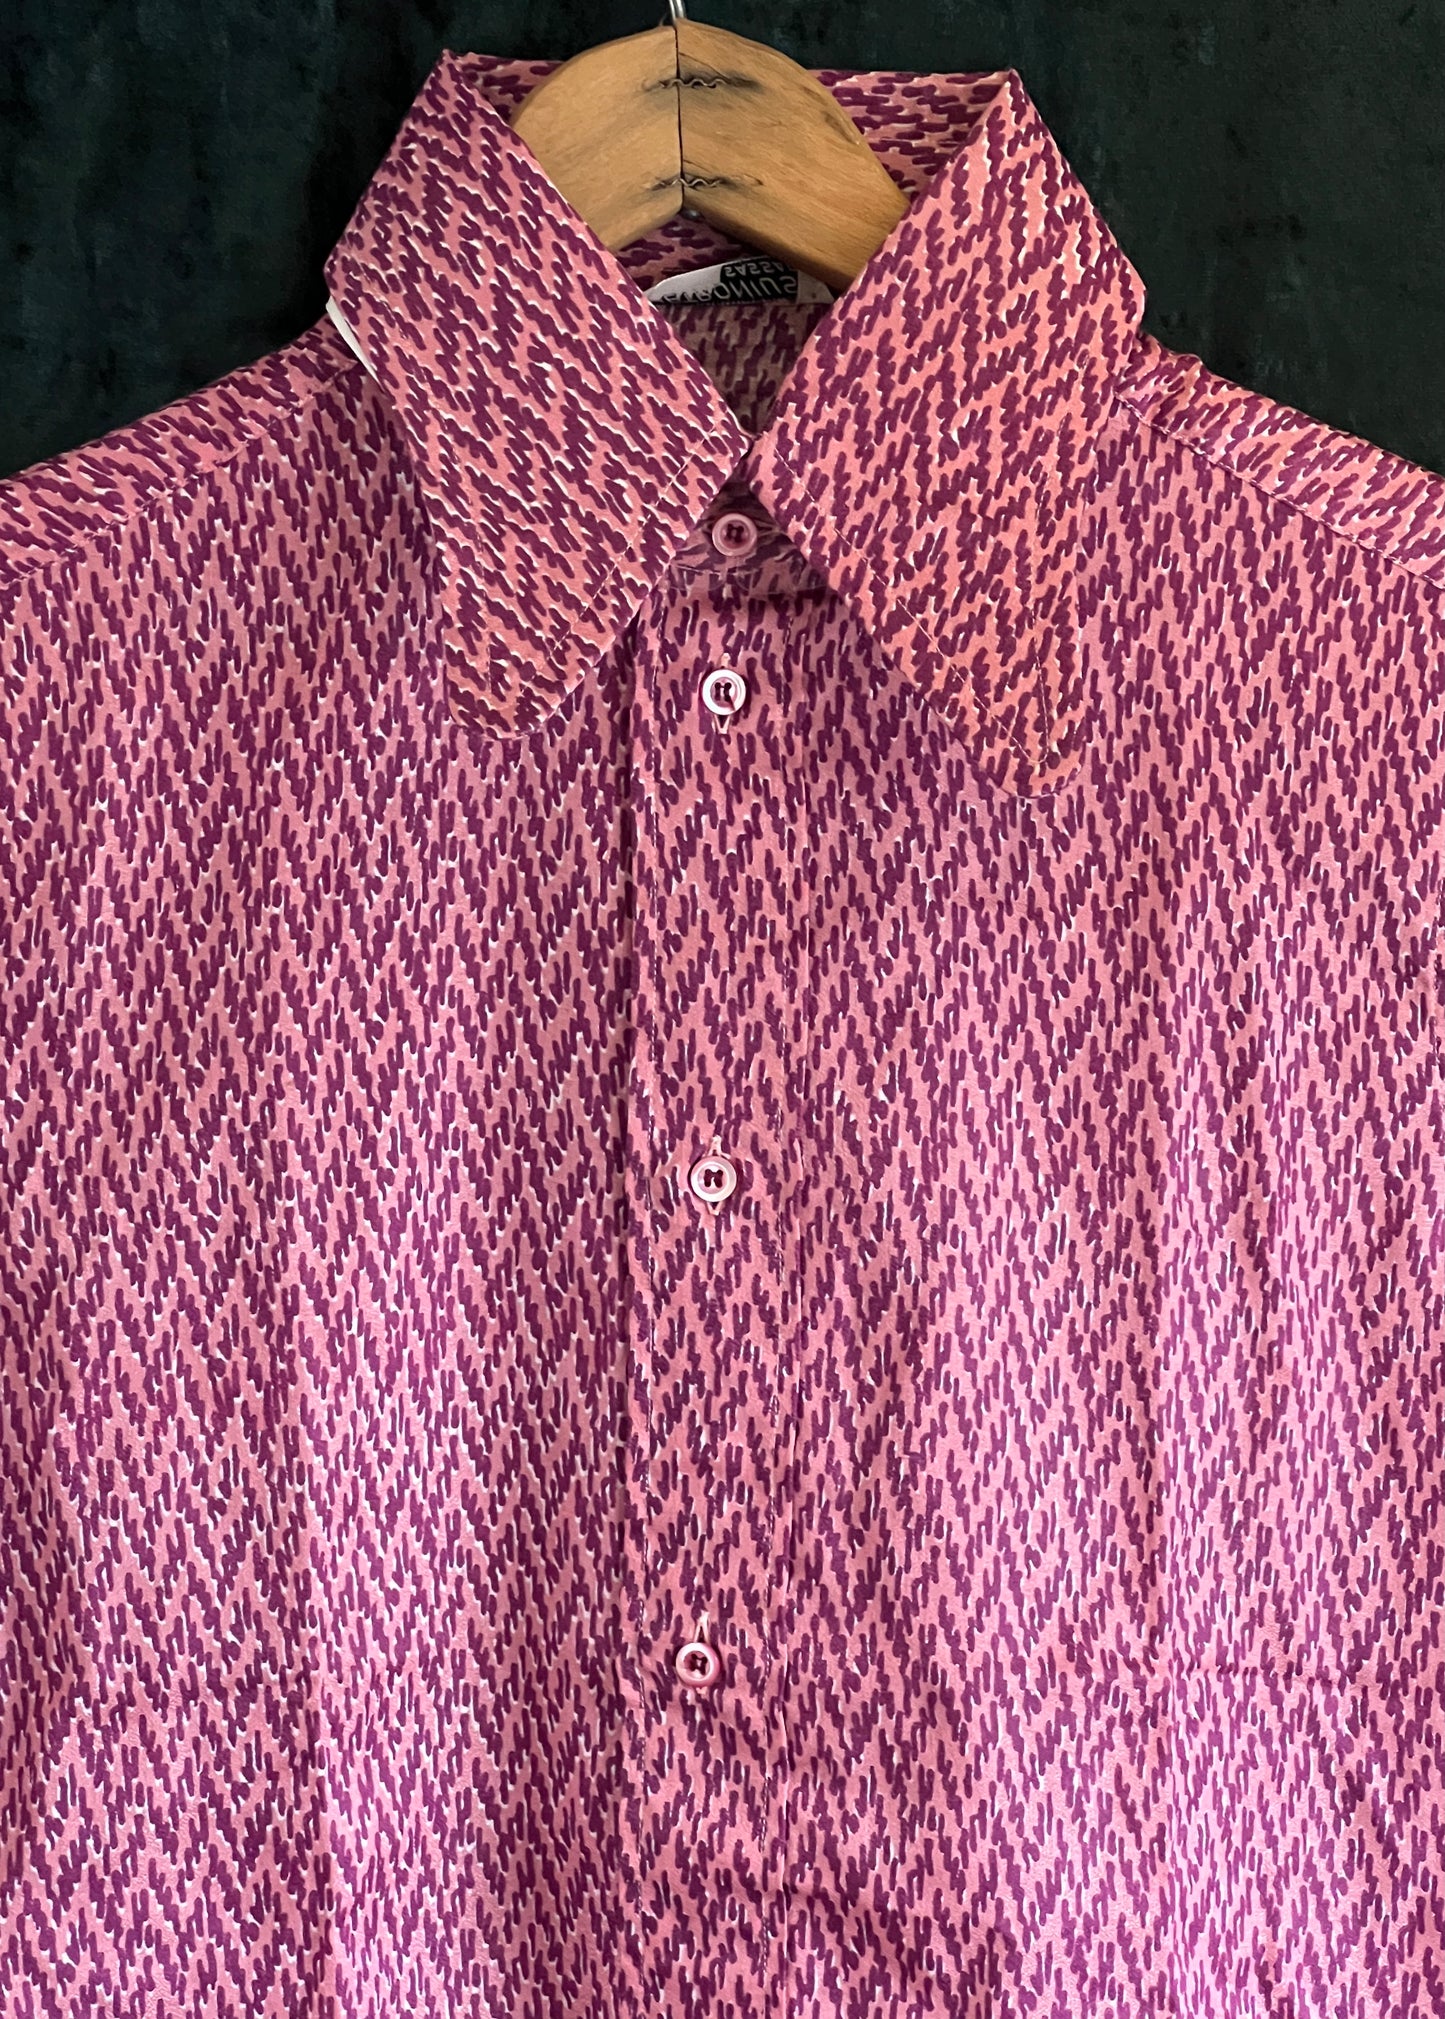 Deadstock Vintage 1970s mans shirt mauve purple large beagle collar Small Sz